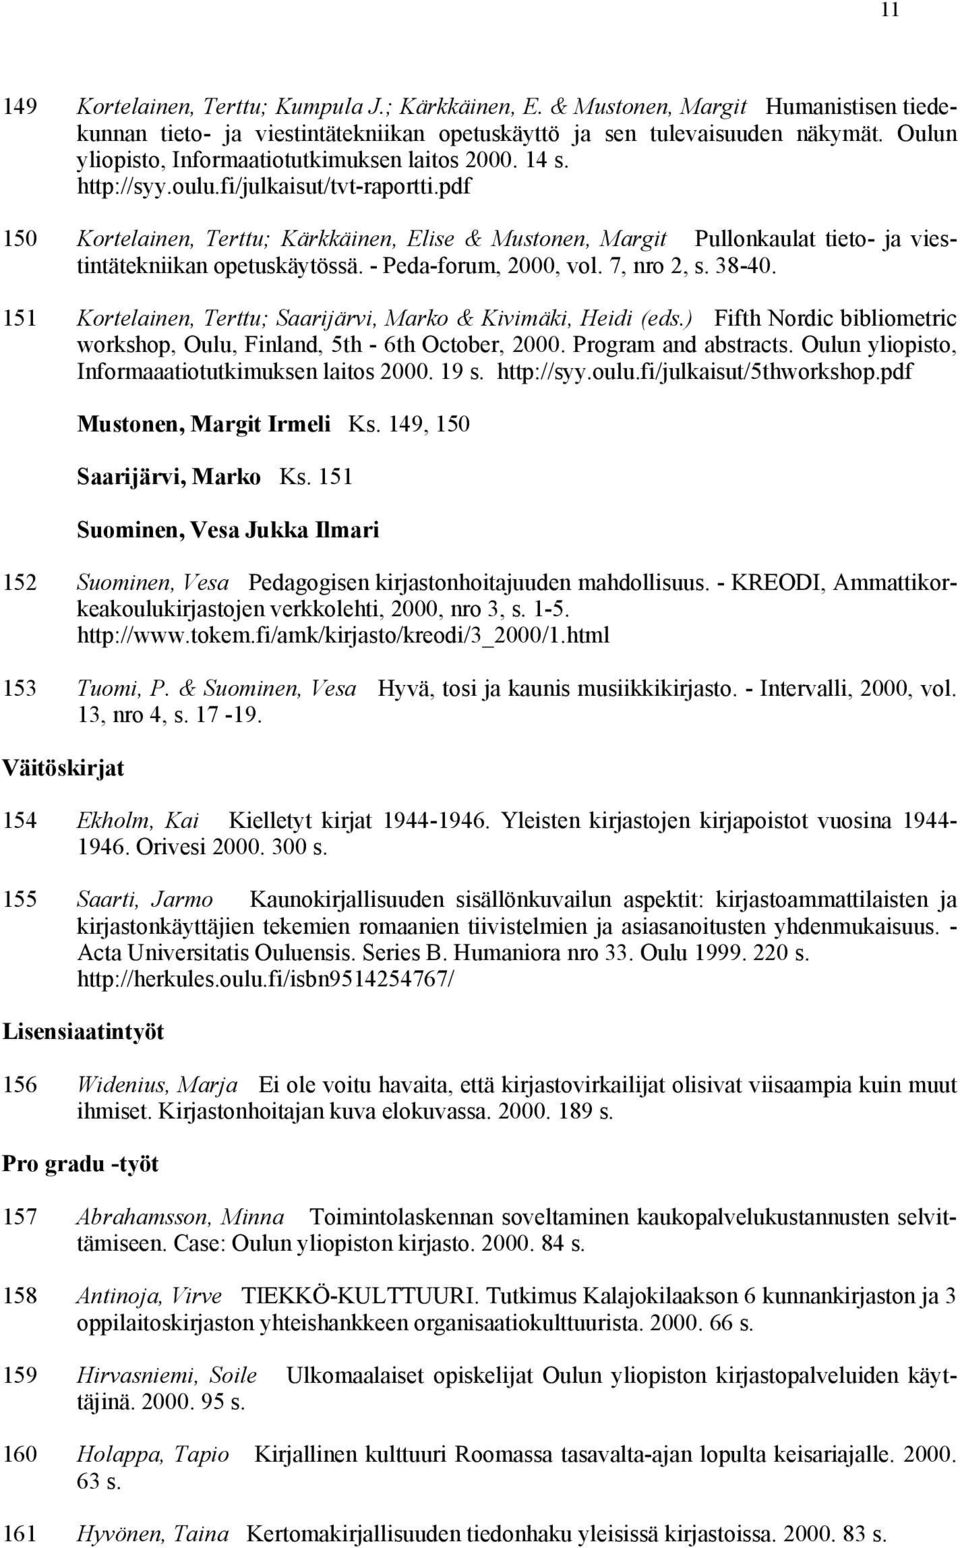 pdf 150 Kortelainen, Terttu; Kärkkäinen, Elise & Mustonen, Margit Pullonkaulat tieto- ja viestintätekniikan opetuskäytössä. - Peda-forum, 2000, vol. 7, nro 2, s. 38-40.